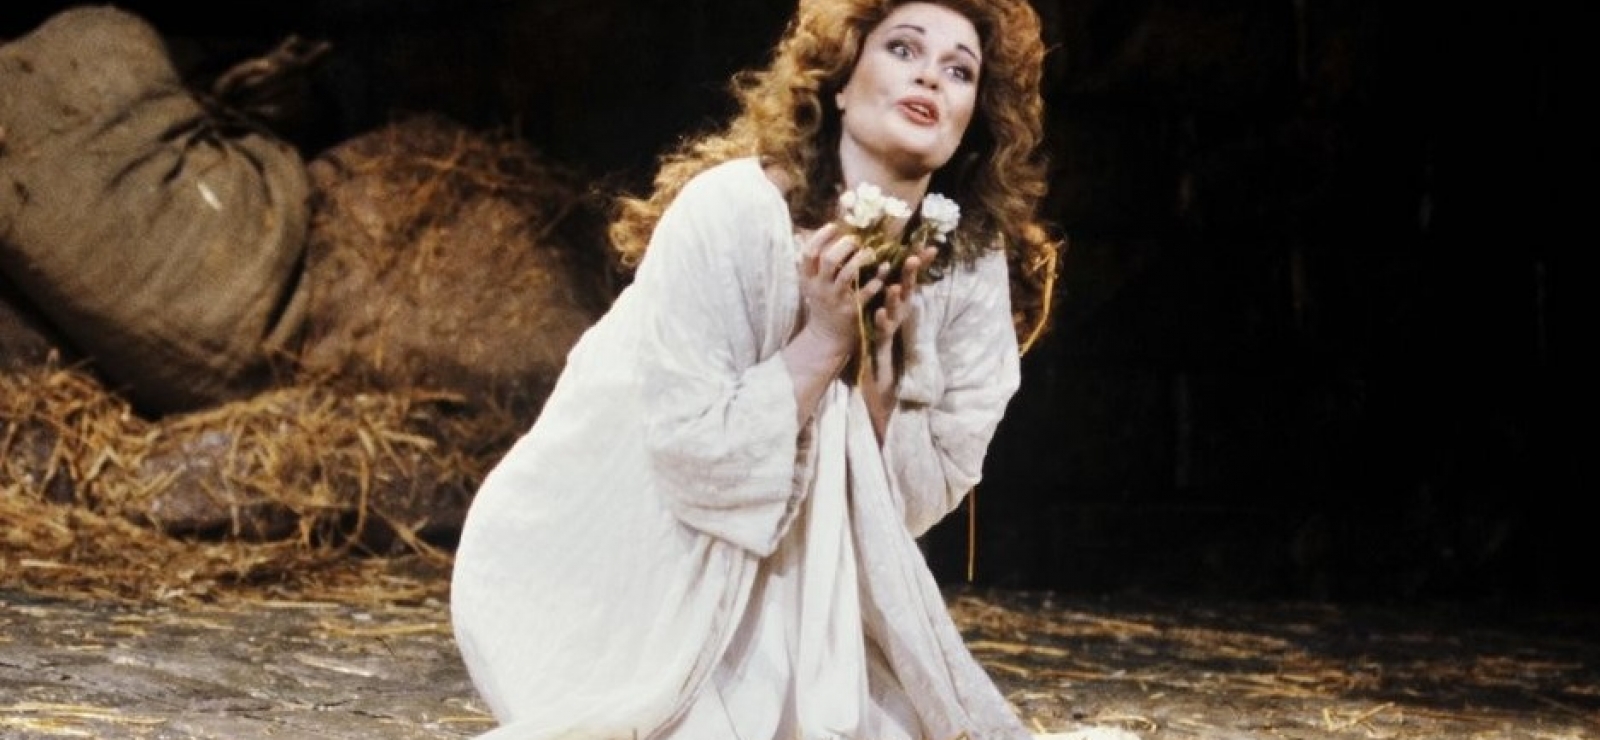 L'opéra à la folie. June Anderson interprète le rôle d'Elvira dans les Puritains de Bellini